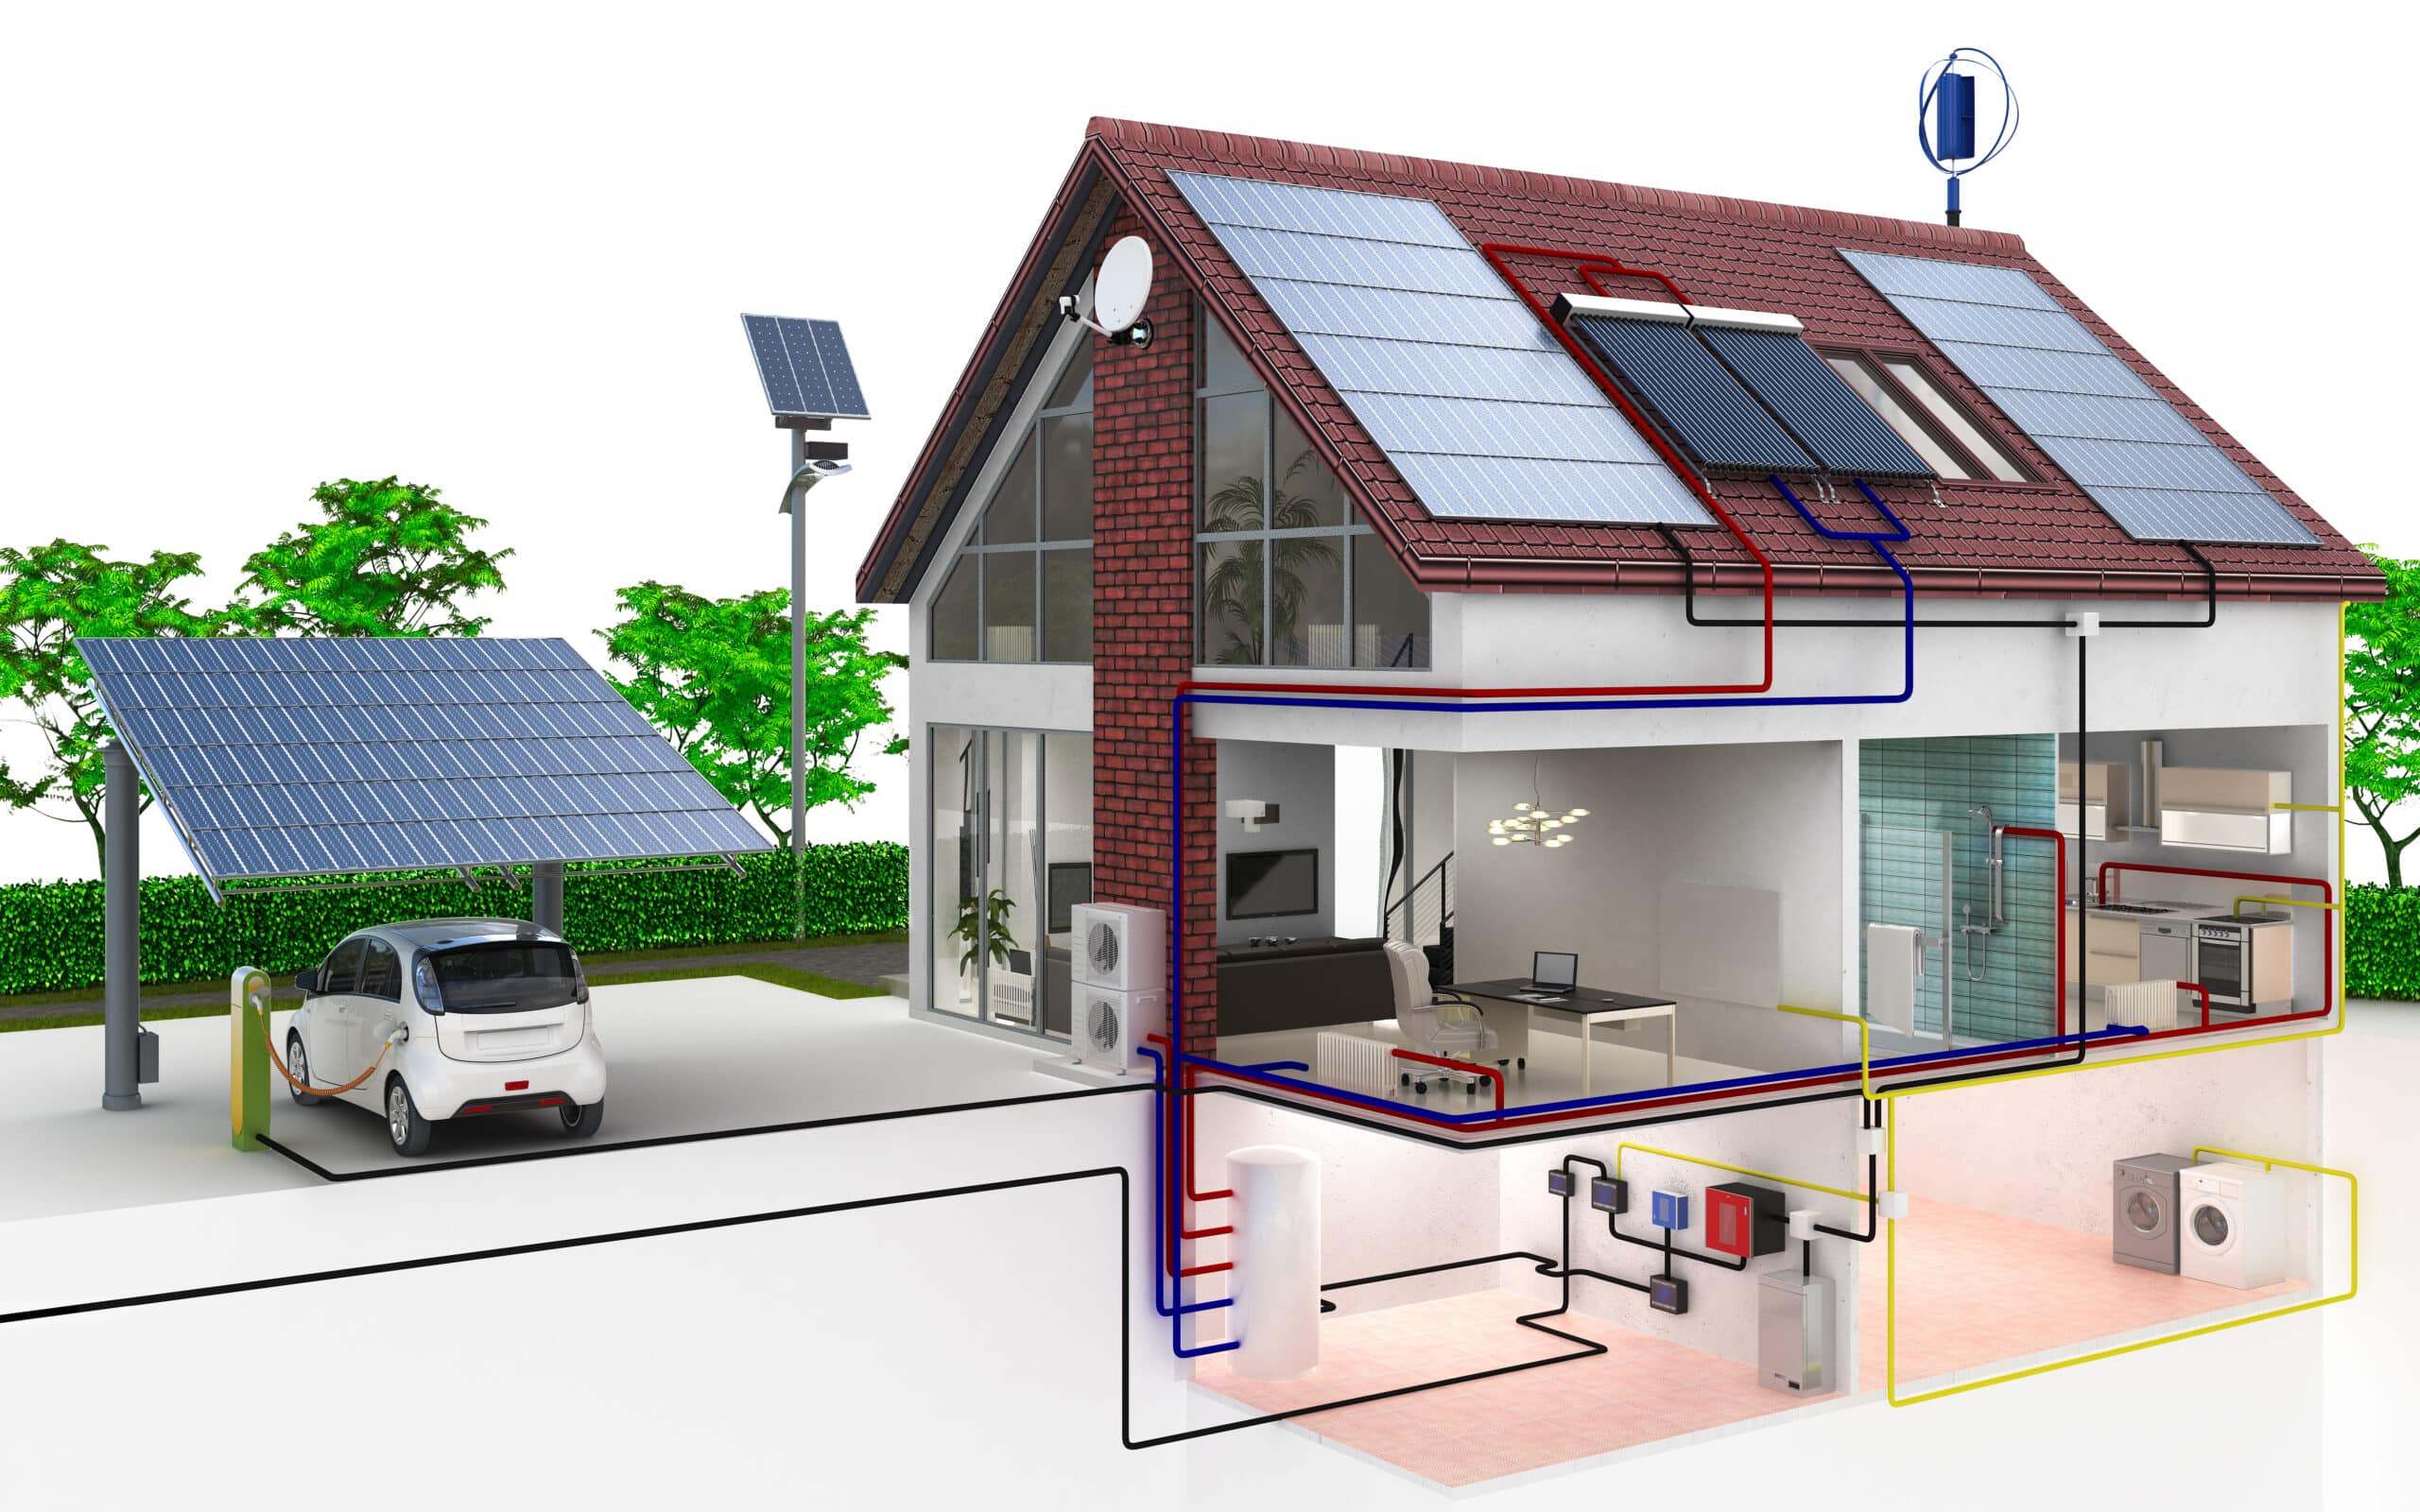 ¿Qué es la energía solar térmica y la energía fotovoltaica? Principales diferencias, aplicaciones y formas de generación de energía